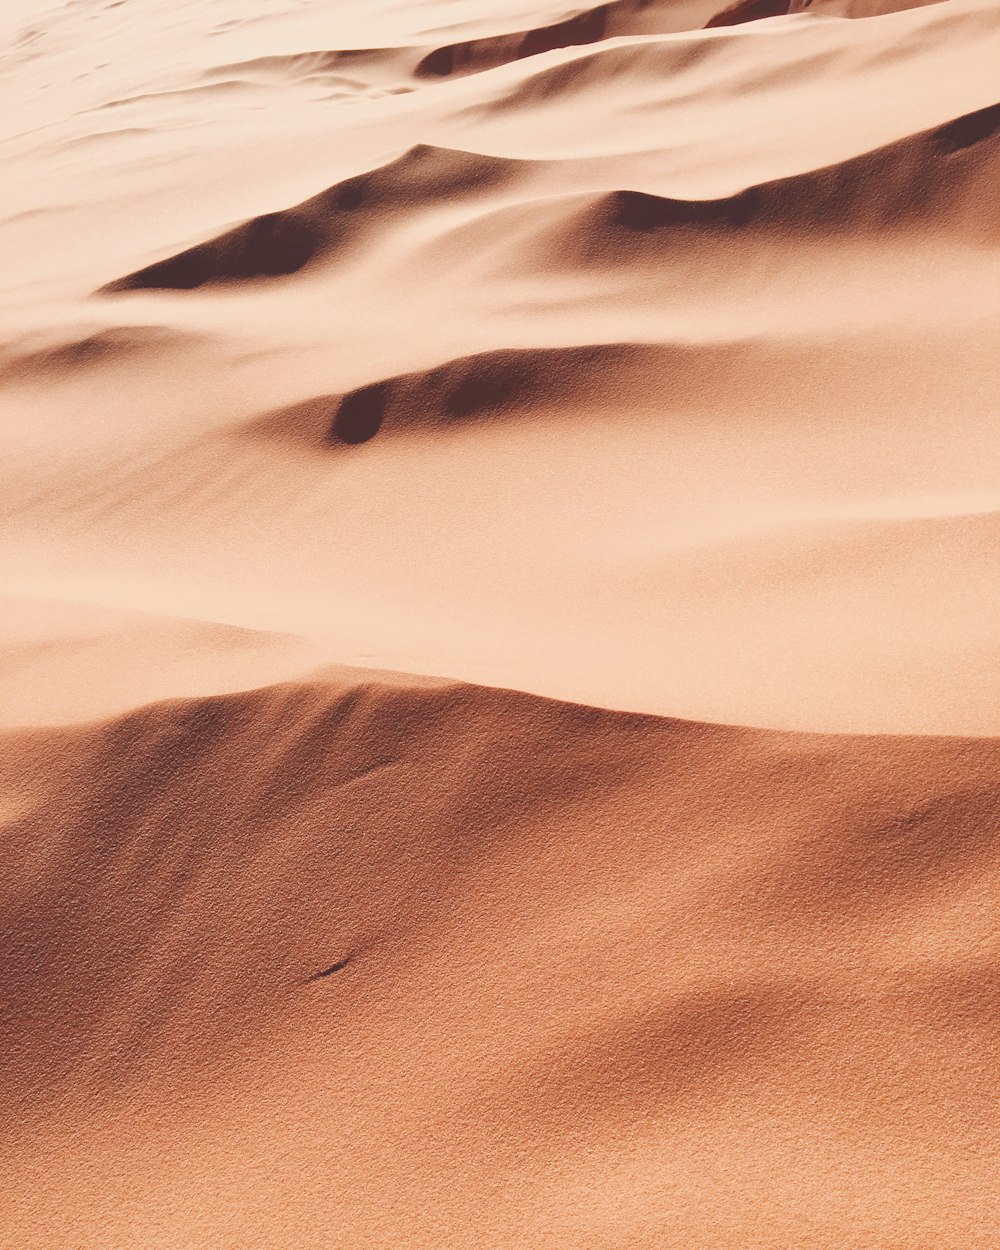 Foto de arena del desierto